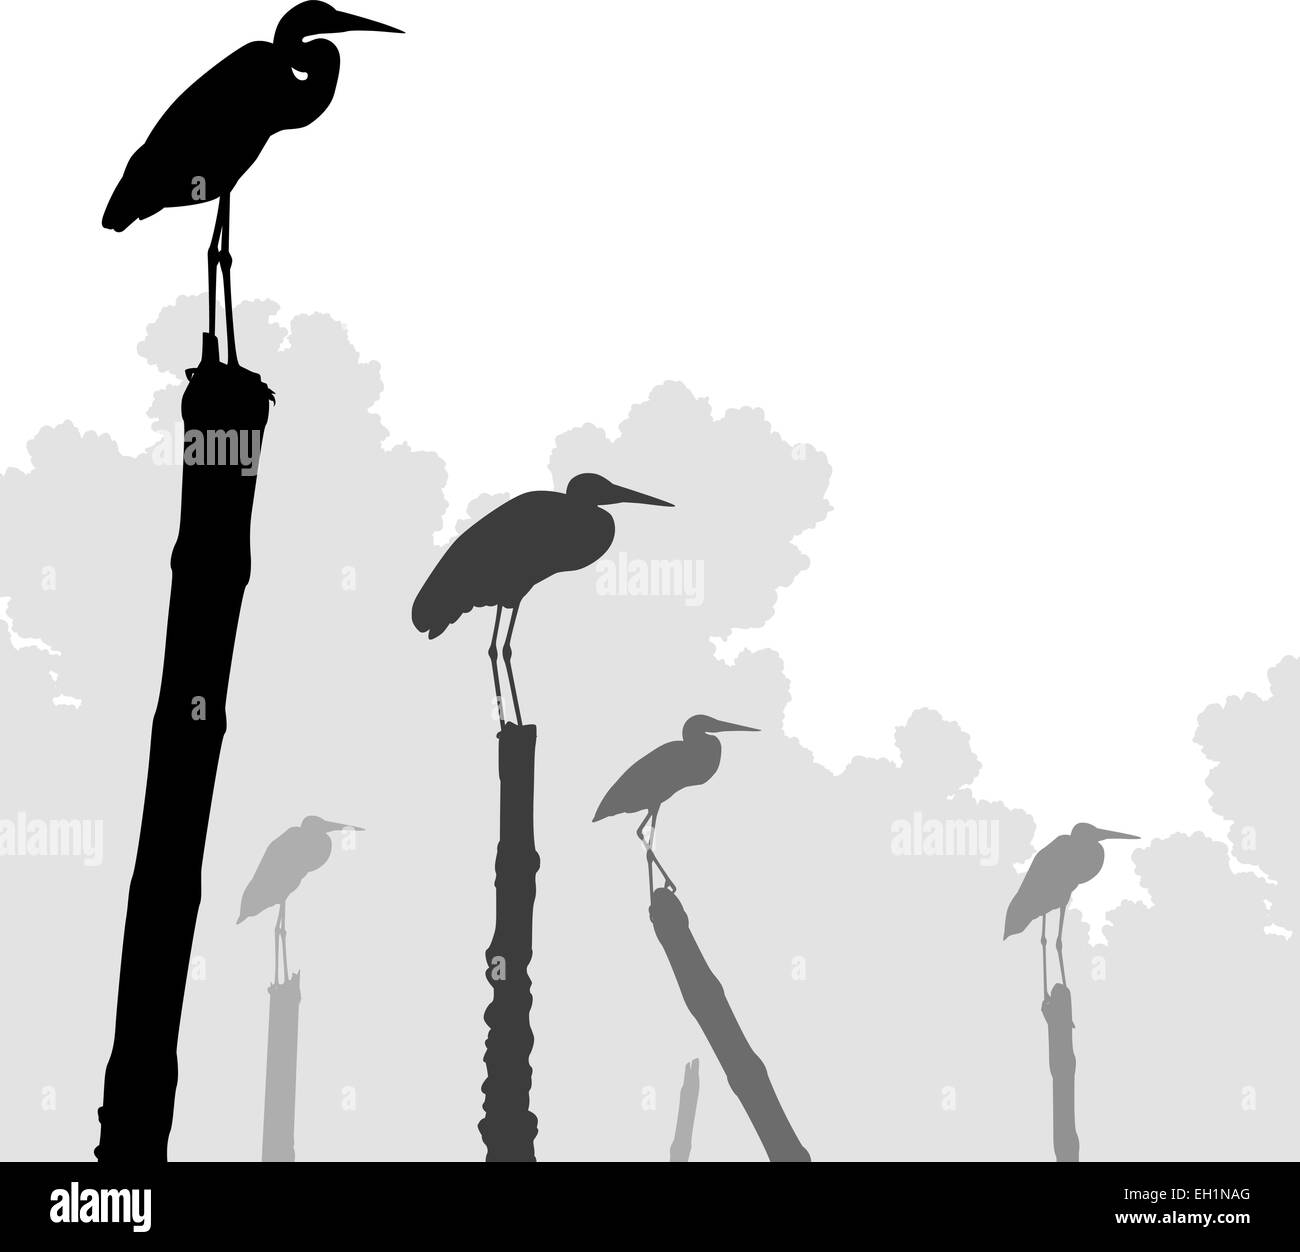 Illustration vectorielle modifiable des silhouettes aigrette perchée sur poteaux avec des oiseaux en tant qu'objets séparés Illustration de Vecteur